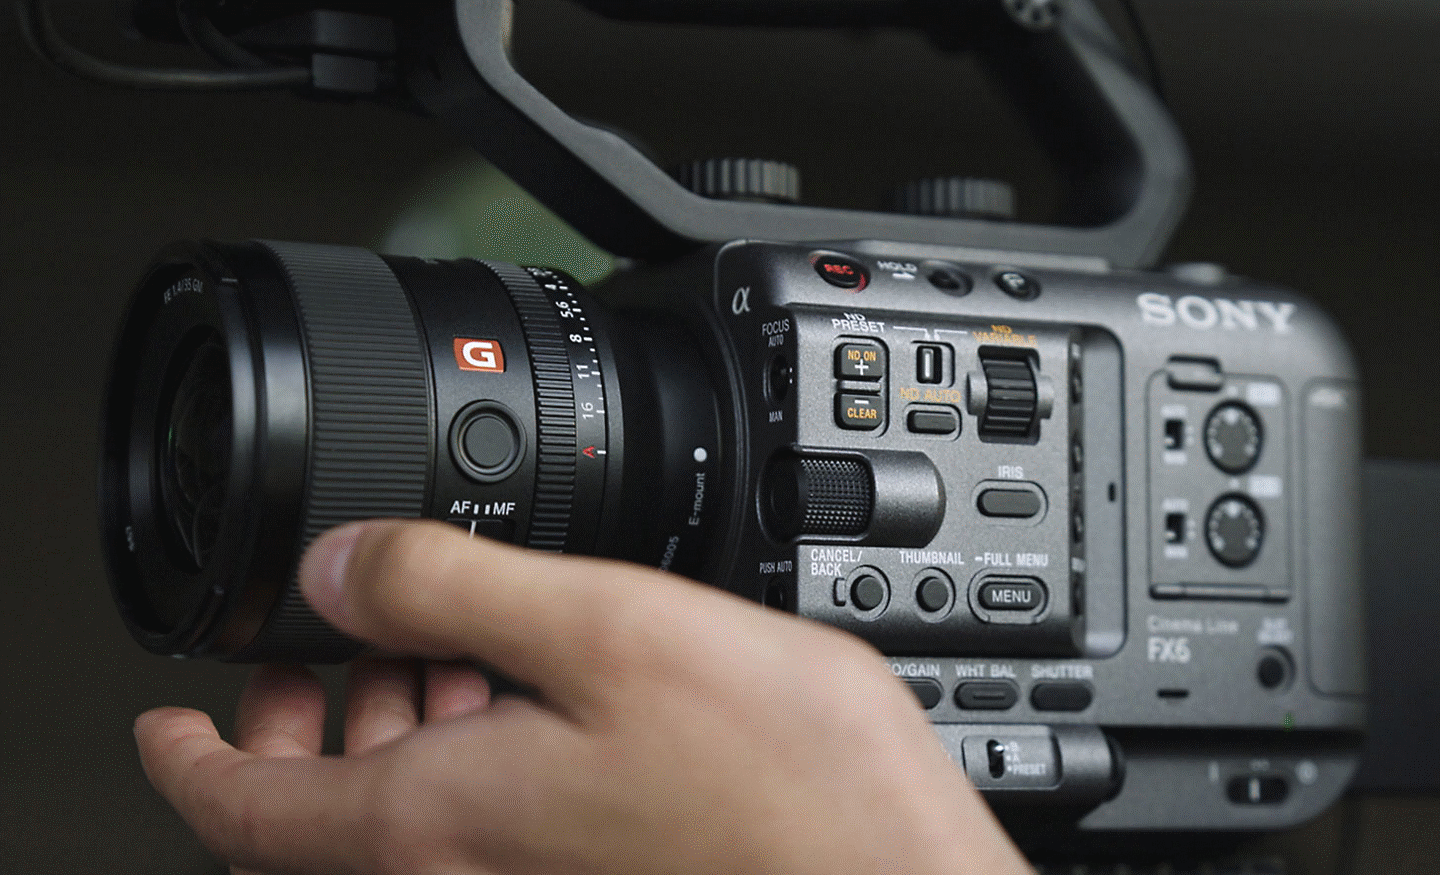 Fotografia em grande plano da FX6 a ser utilizada para filmar